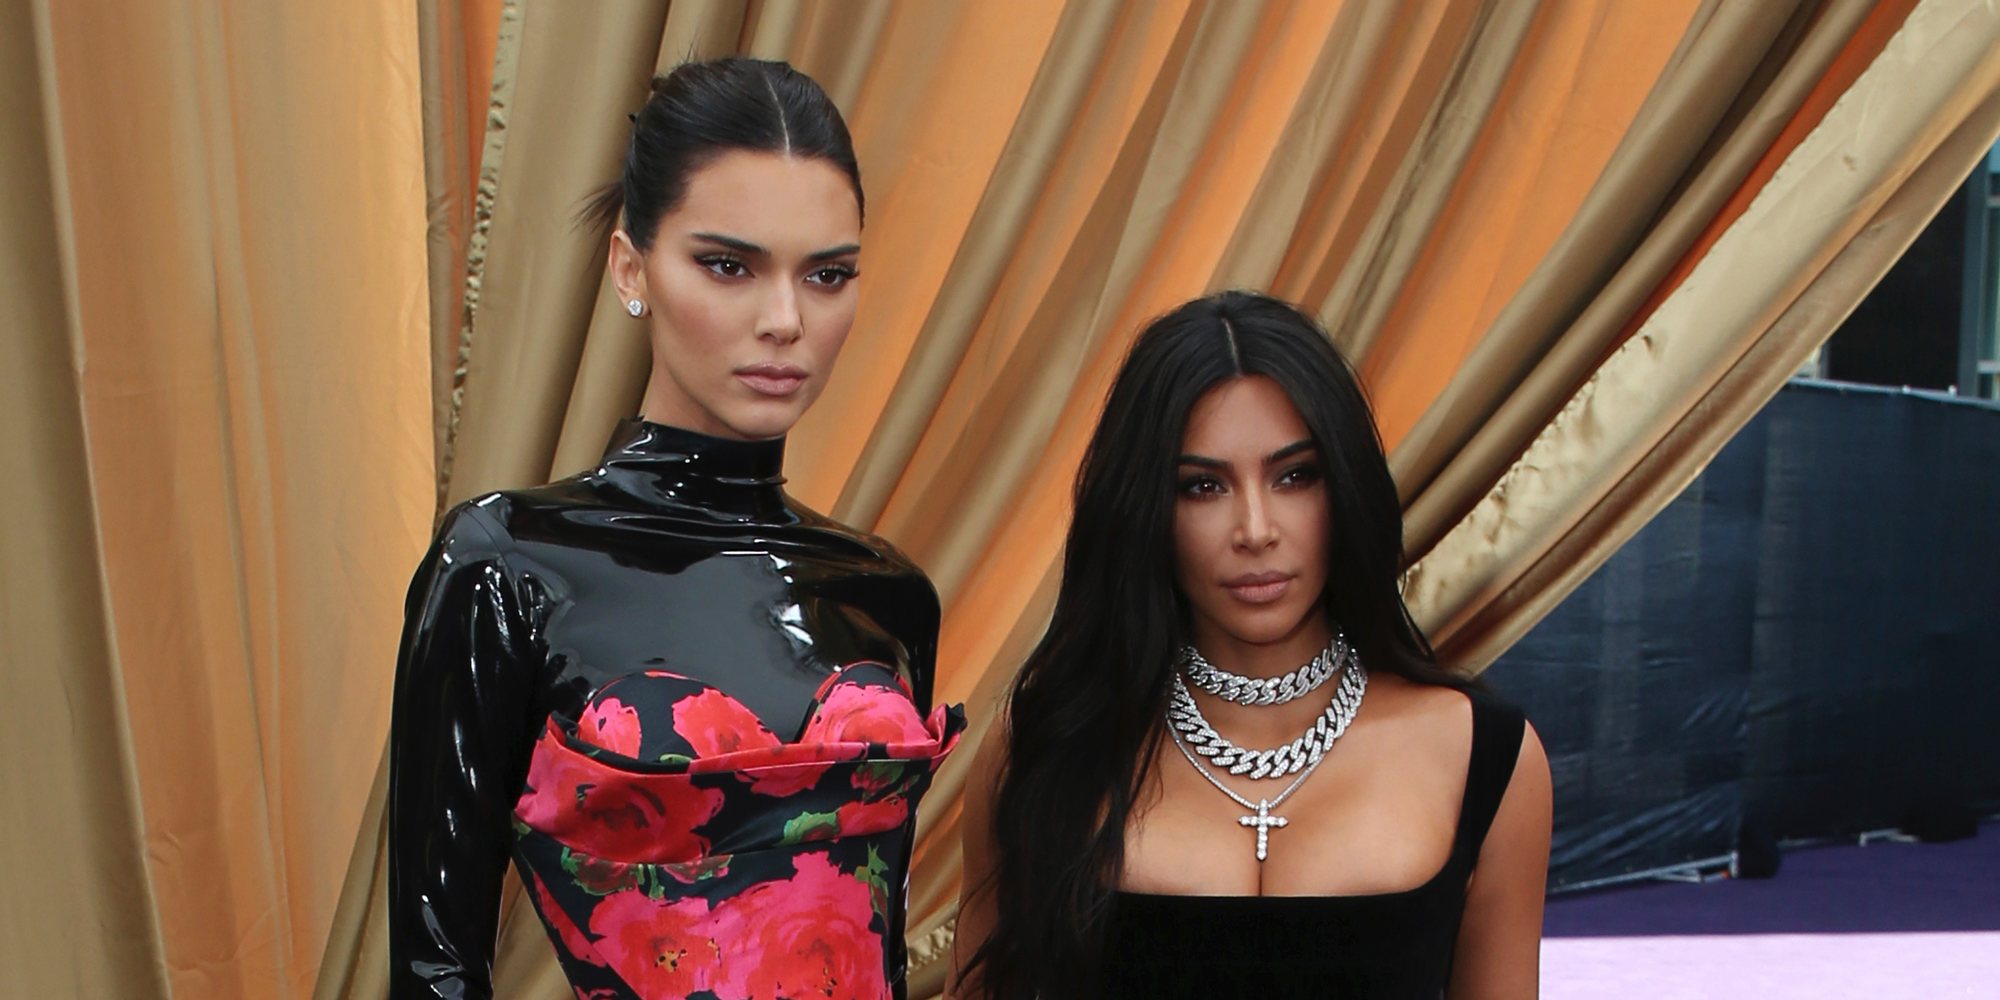 El discurso de Kim Kardashian y Kendall Jenner, objeto de burla durante los Emmy 2019